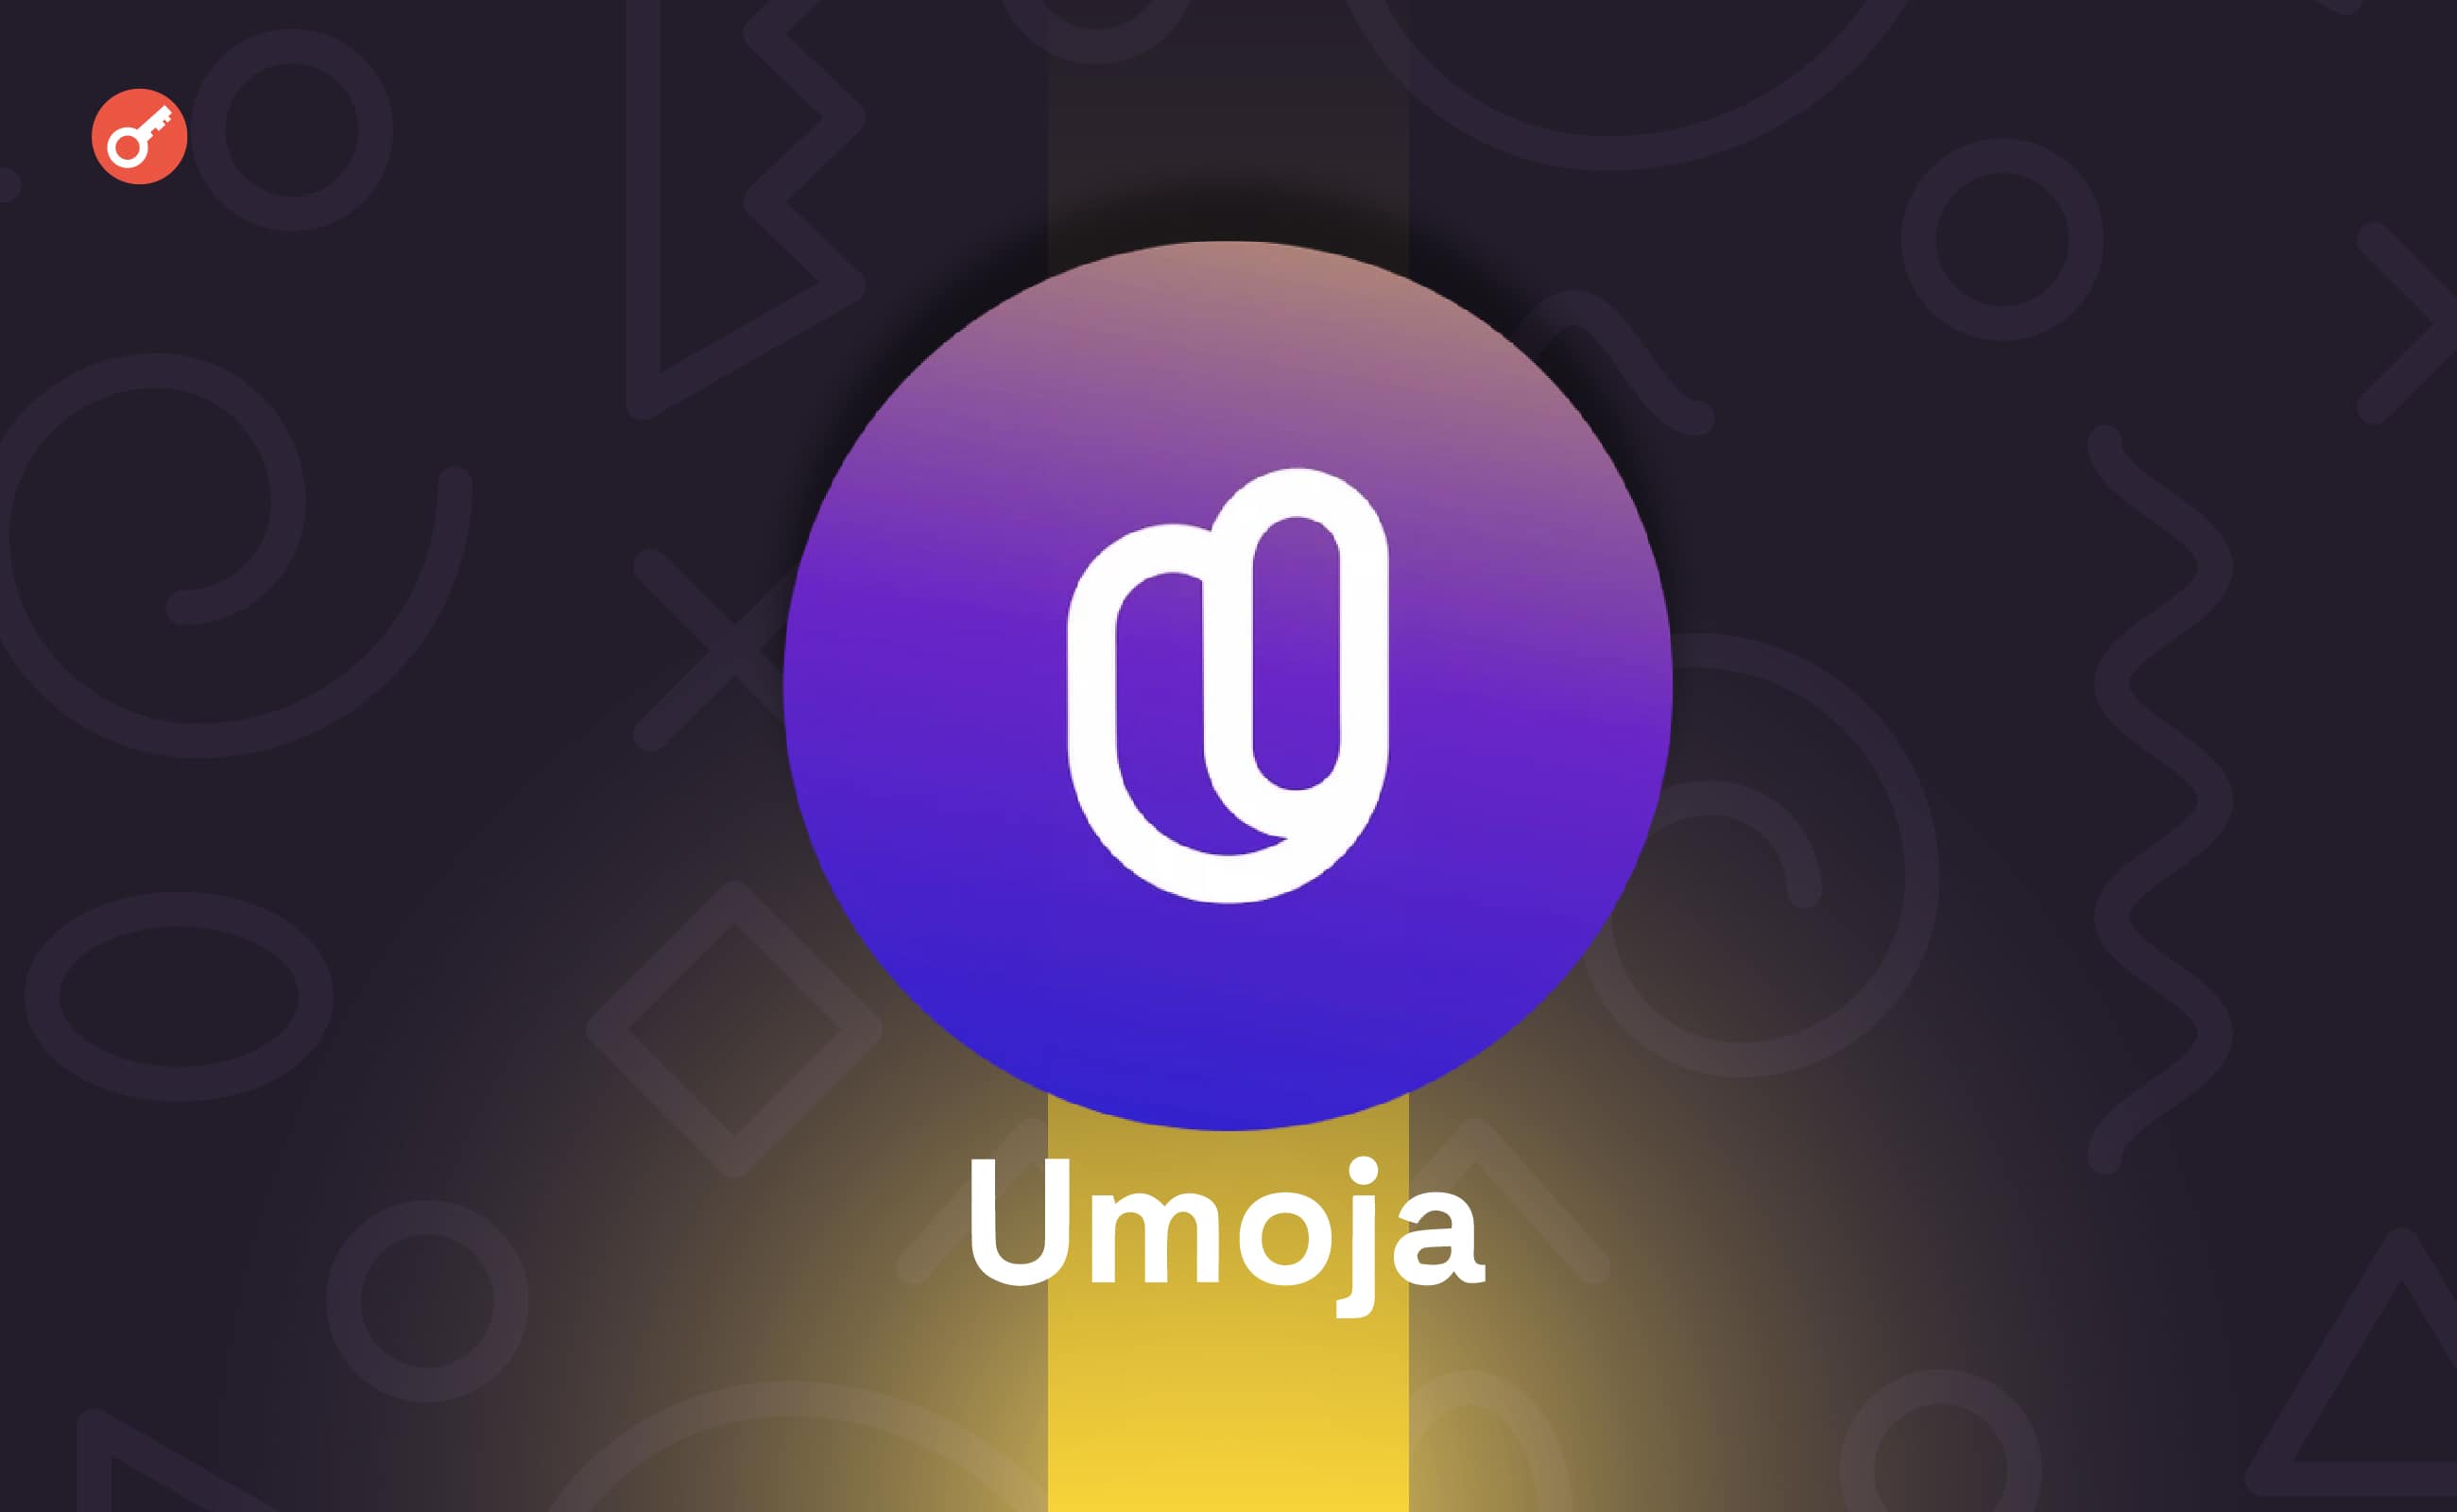 Протокол Umoja залучив $2 млн інвестицій. Головний колаж новини.